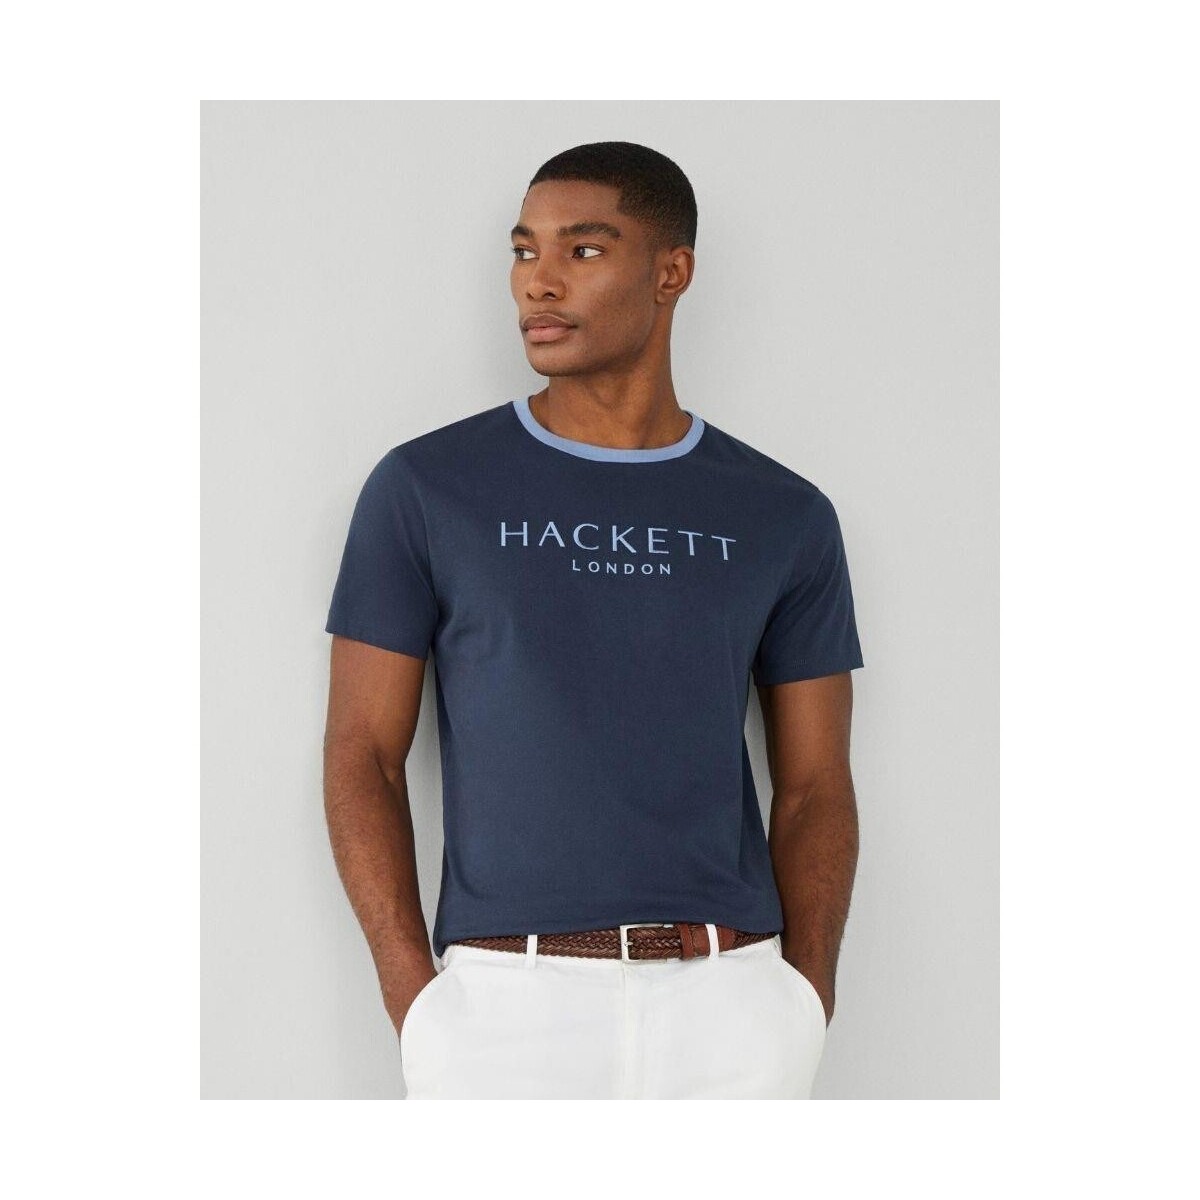 tekstylia Męskie T-shirty z krótkim rękawem Hackett HM500797 HERITAGE Niebieski